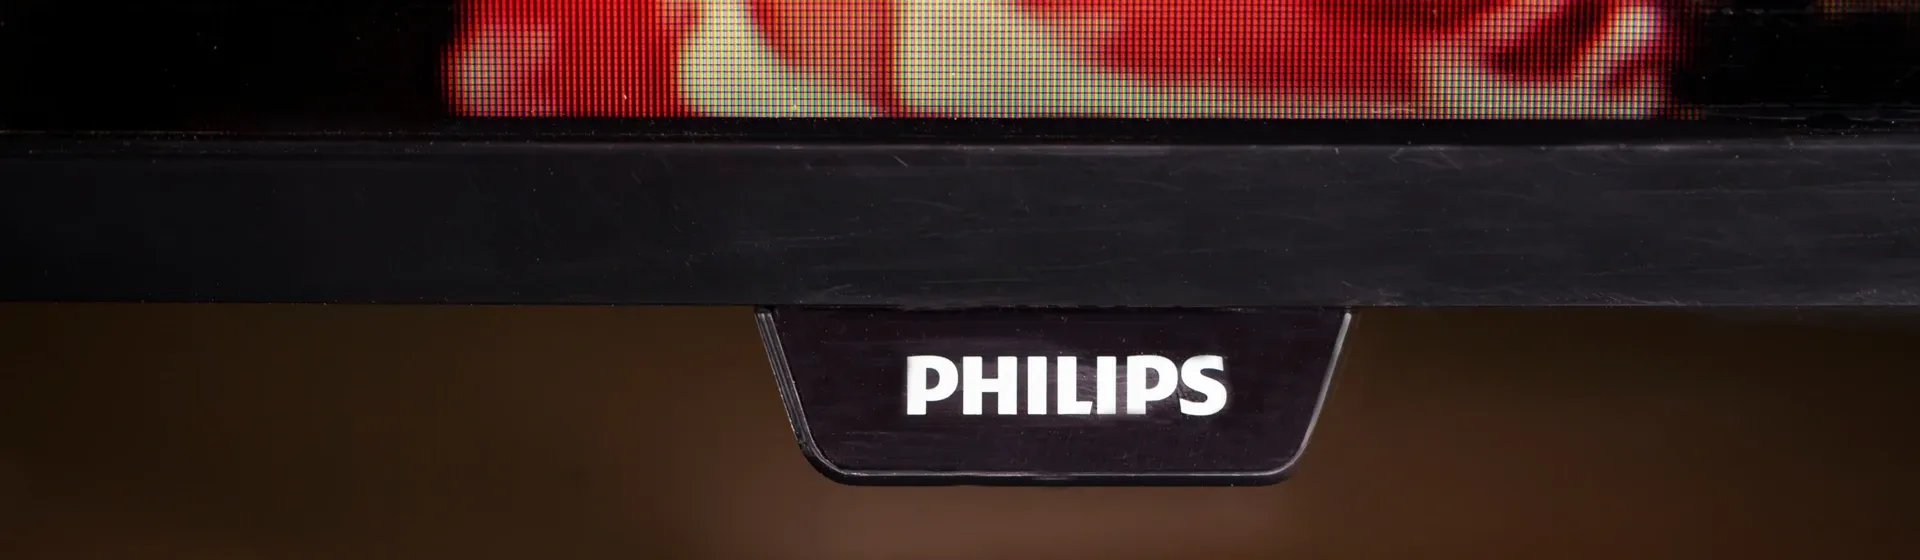 Melhor TV Philips: 4 modelos para comprar